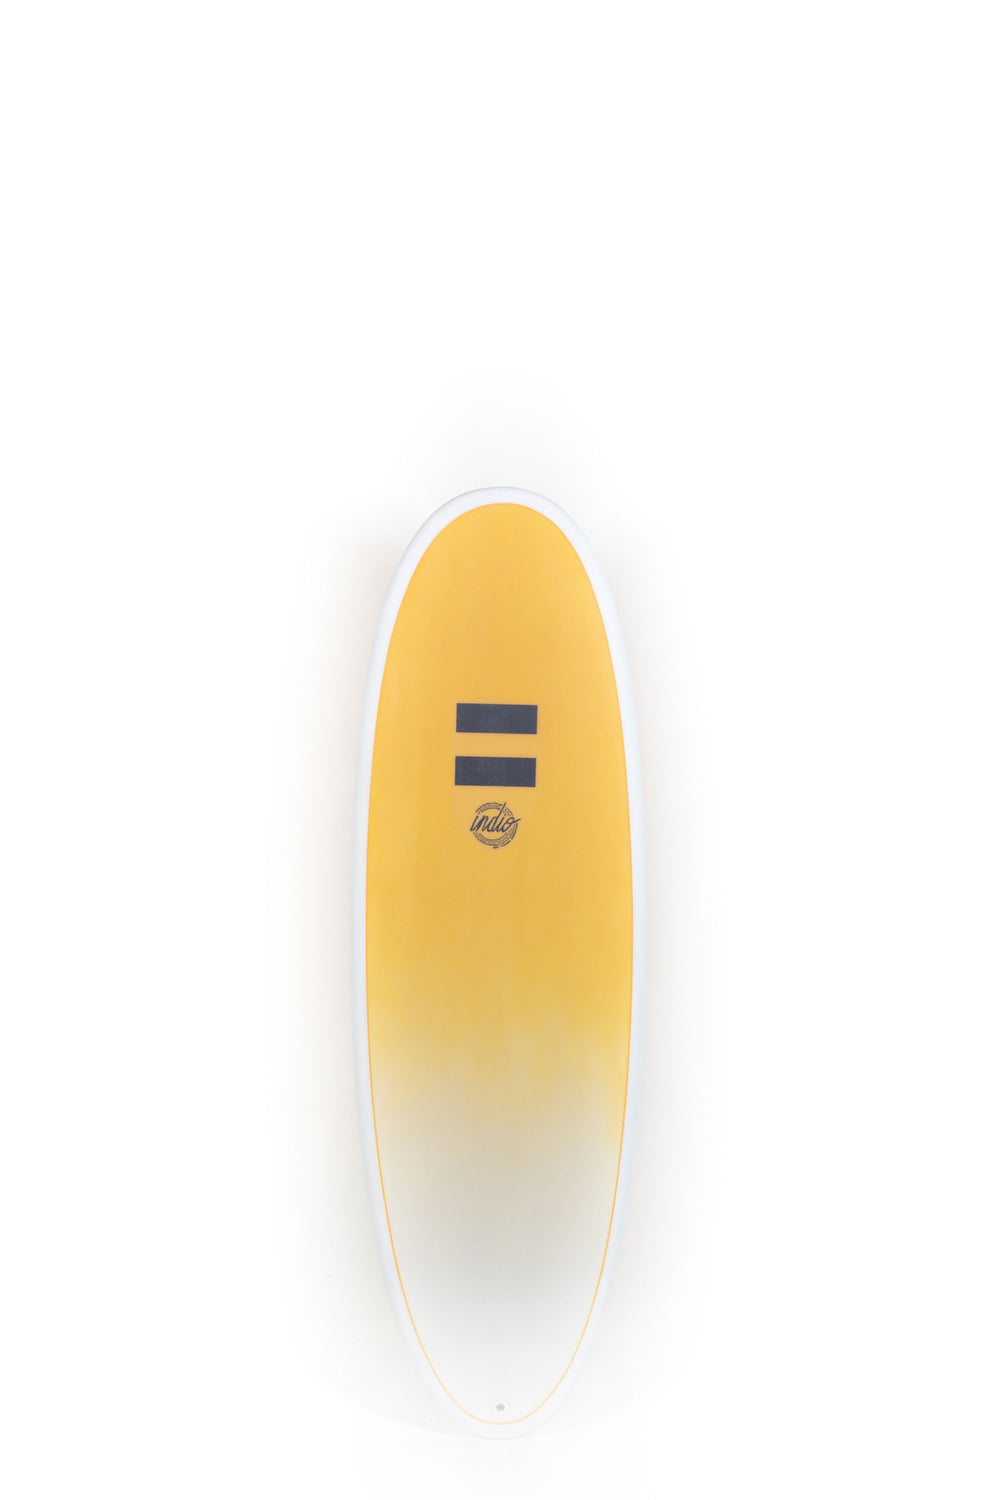 Pukas Surf Shop - Indio Surfboards - PLUS Banana Carbon - 5'10